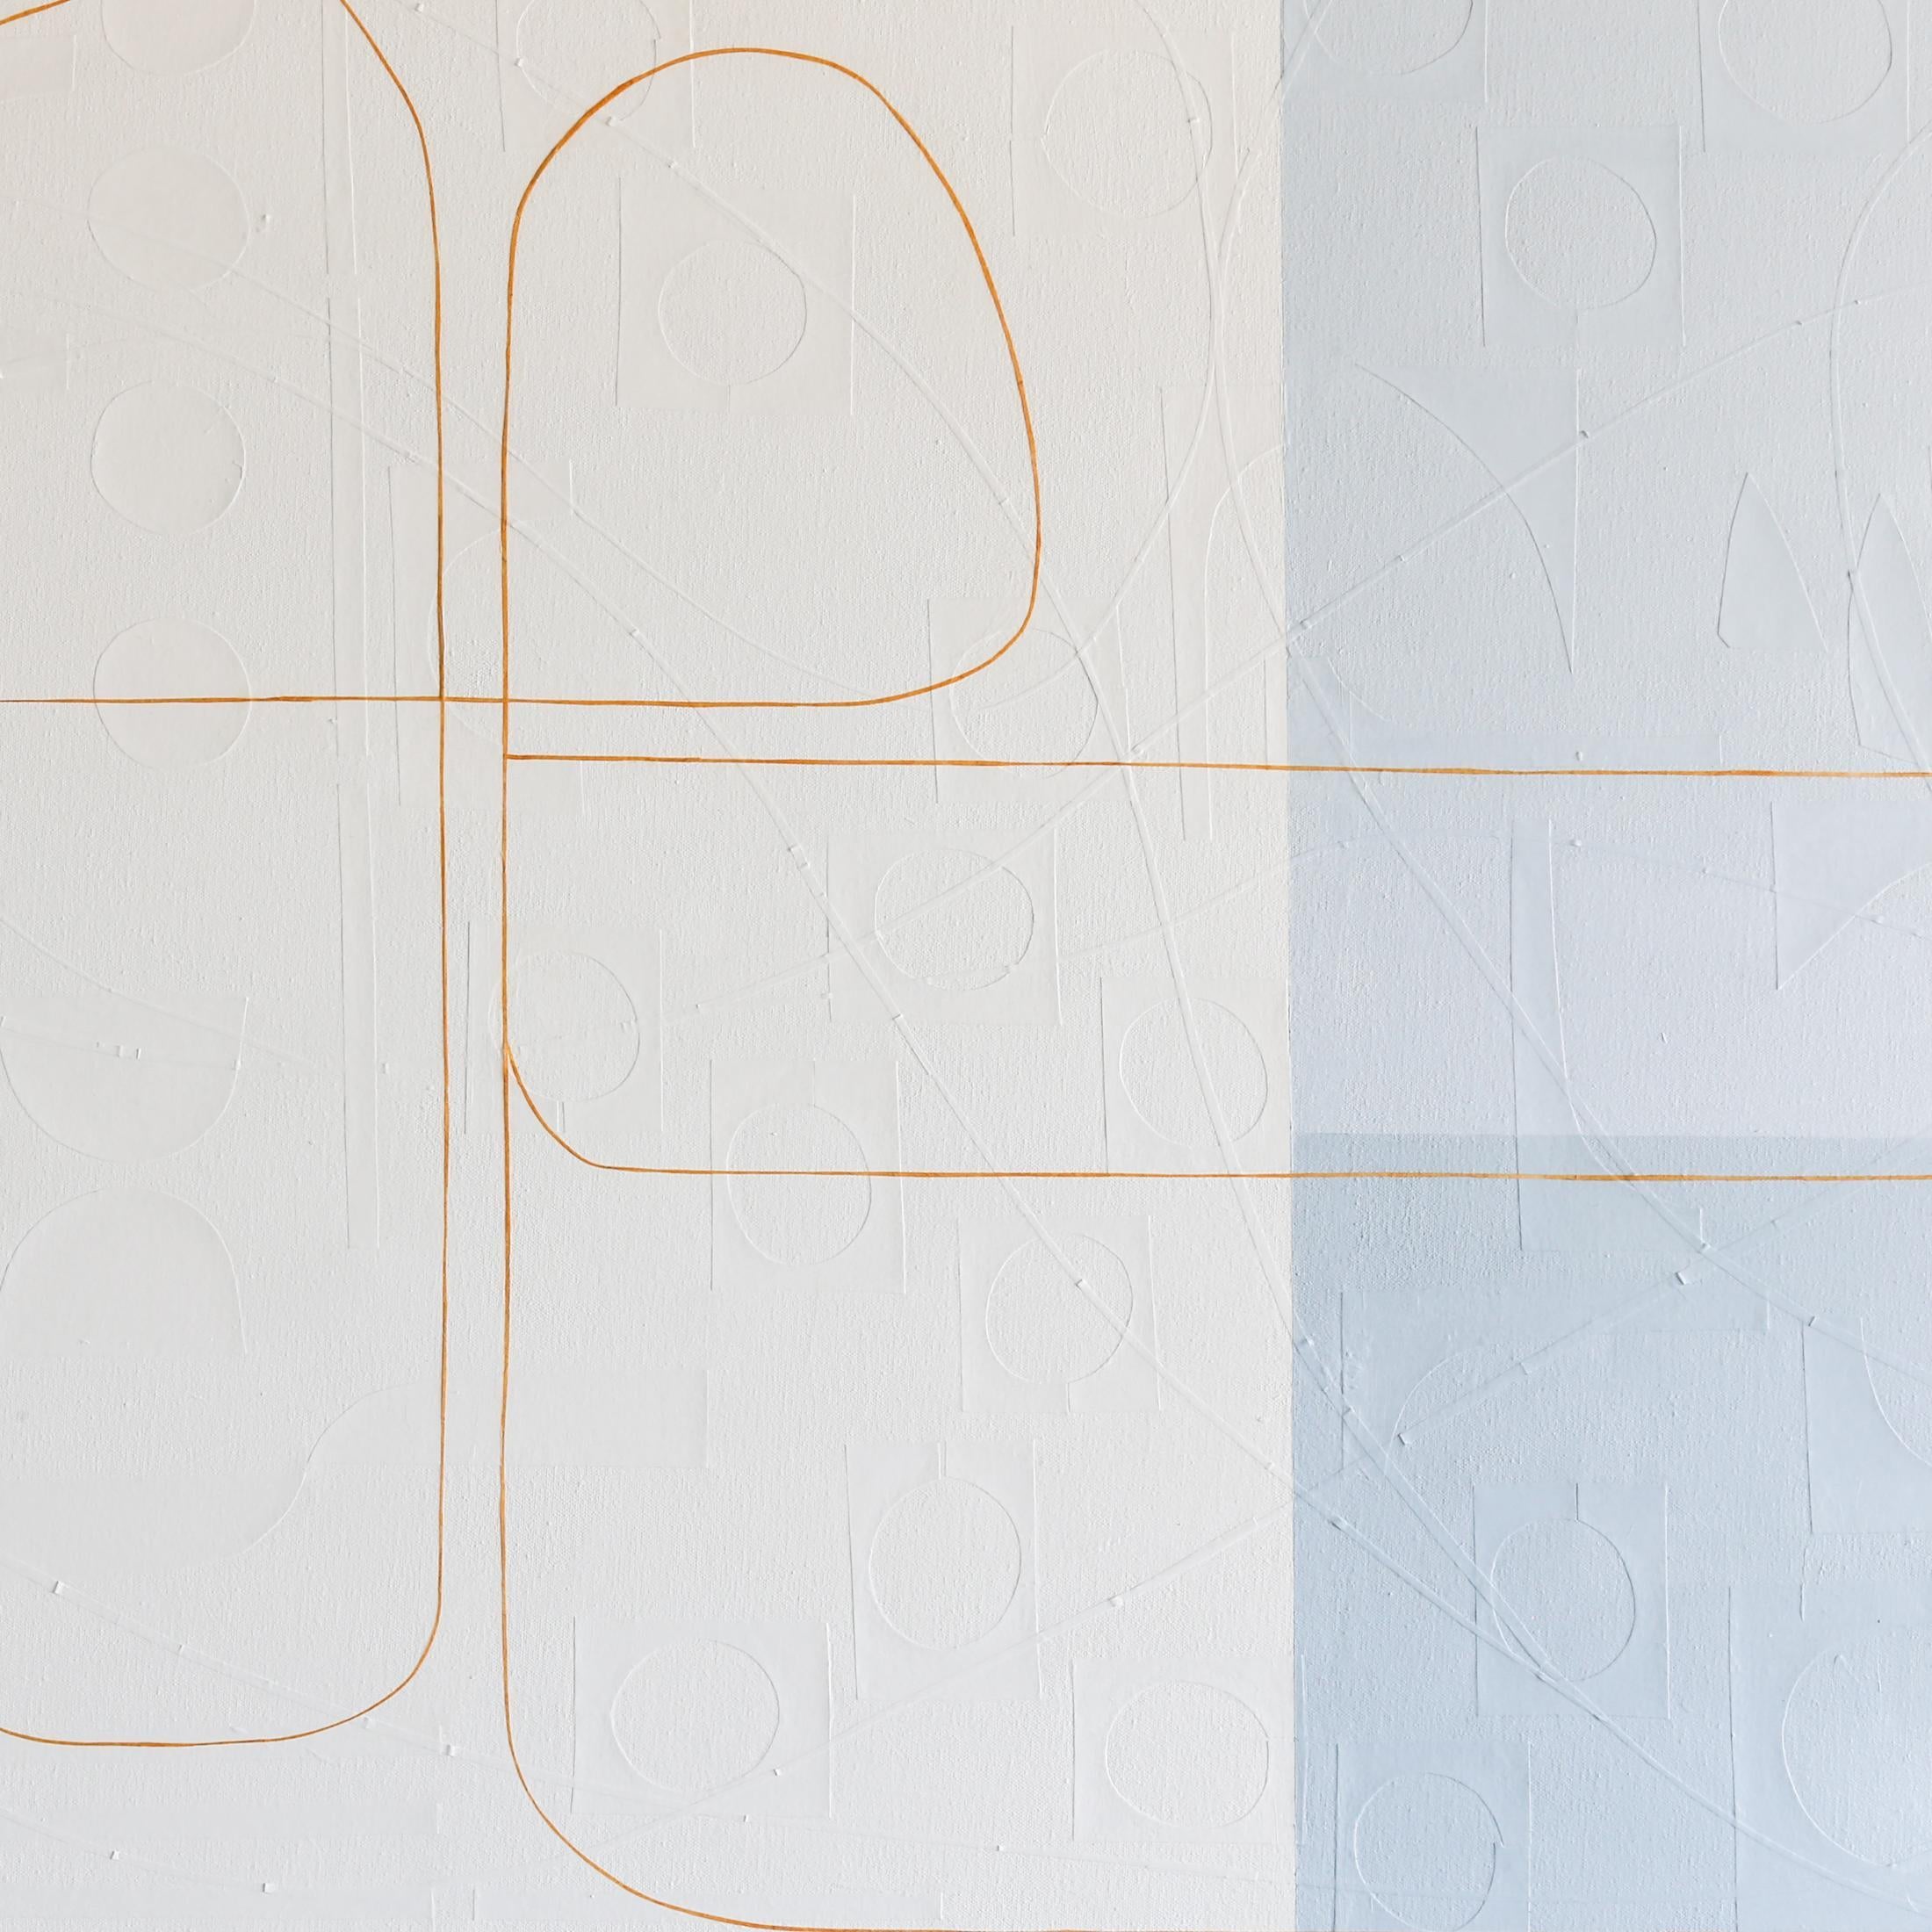 Les œuvres abstraites de Maura Segal évoquent une délicate simplicité. Des blocs de couleur s'étalent langoureusement derrière de fines lignes sinueuses et des courbes fluides et libres. Pourtant, en y regardant de plus près, le savoir-faire de